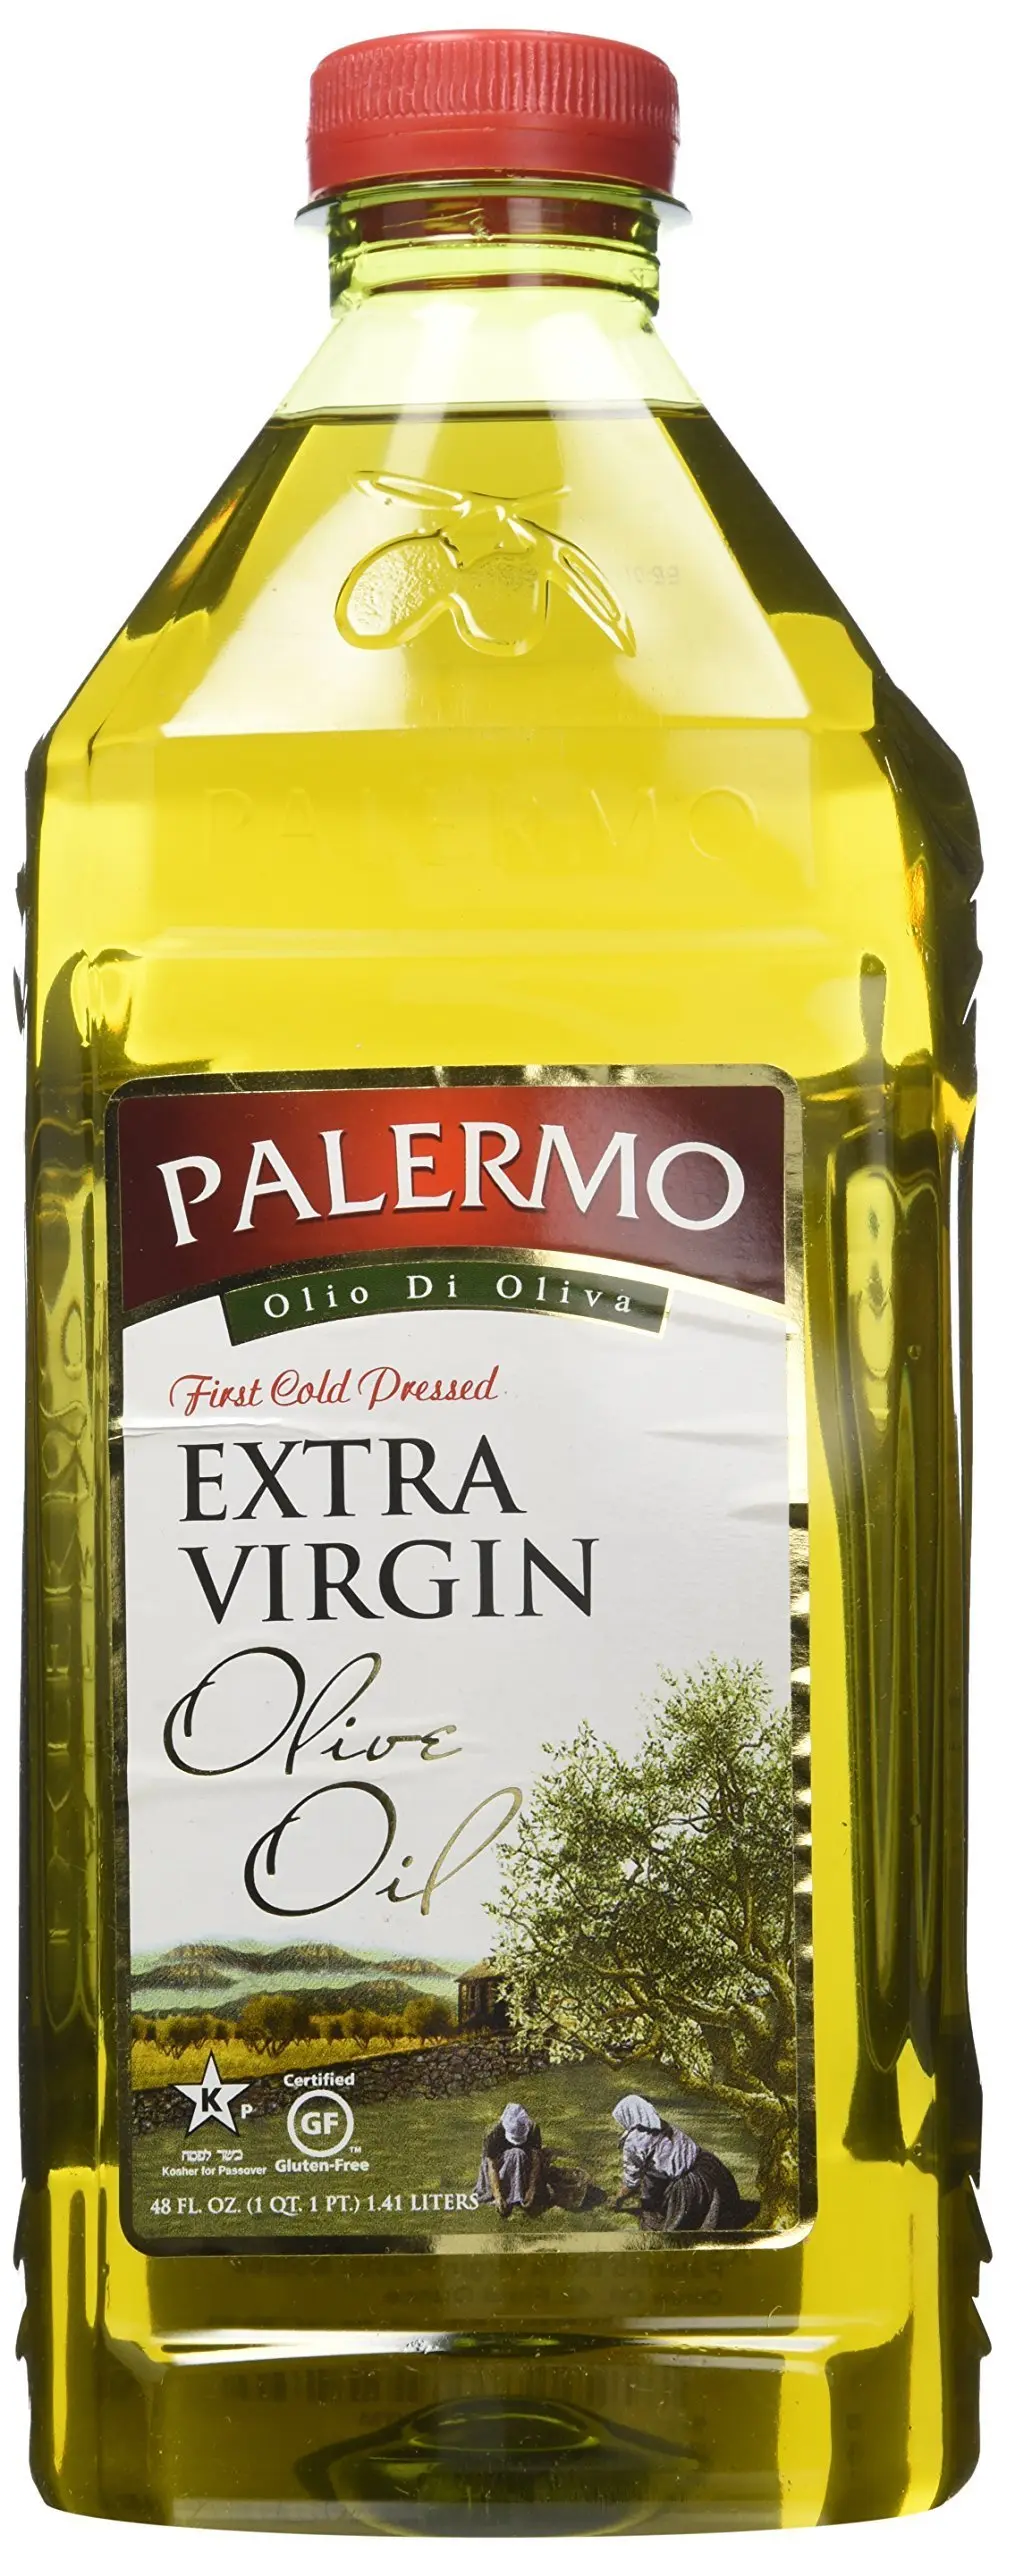 aceite de oliva en plastico - Que se puede limpiar con el aceite de oliva